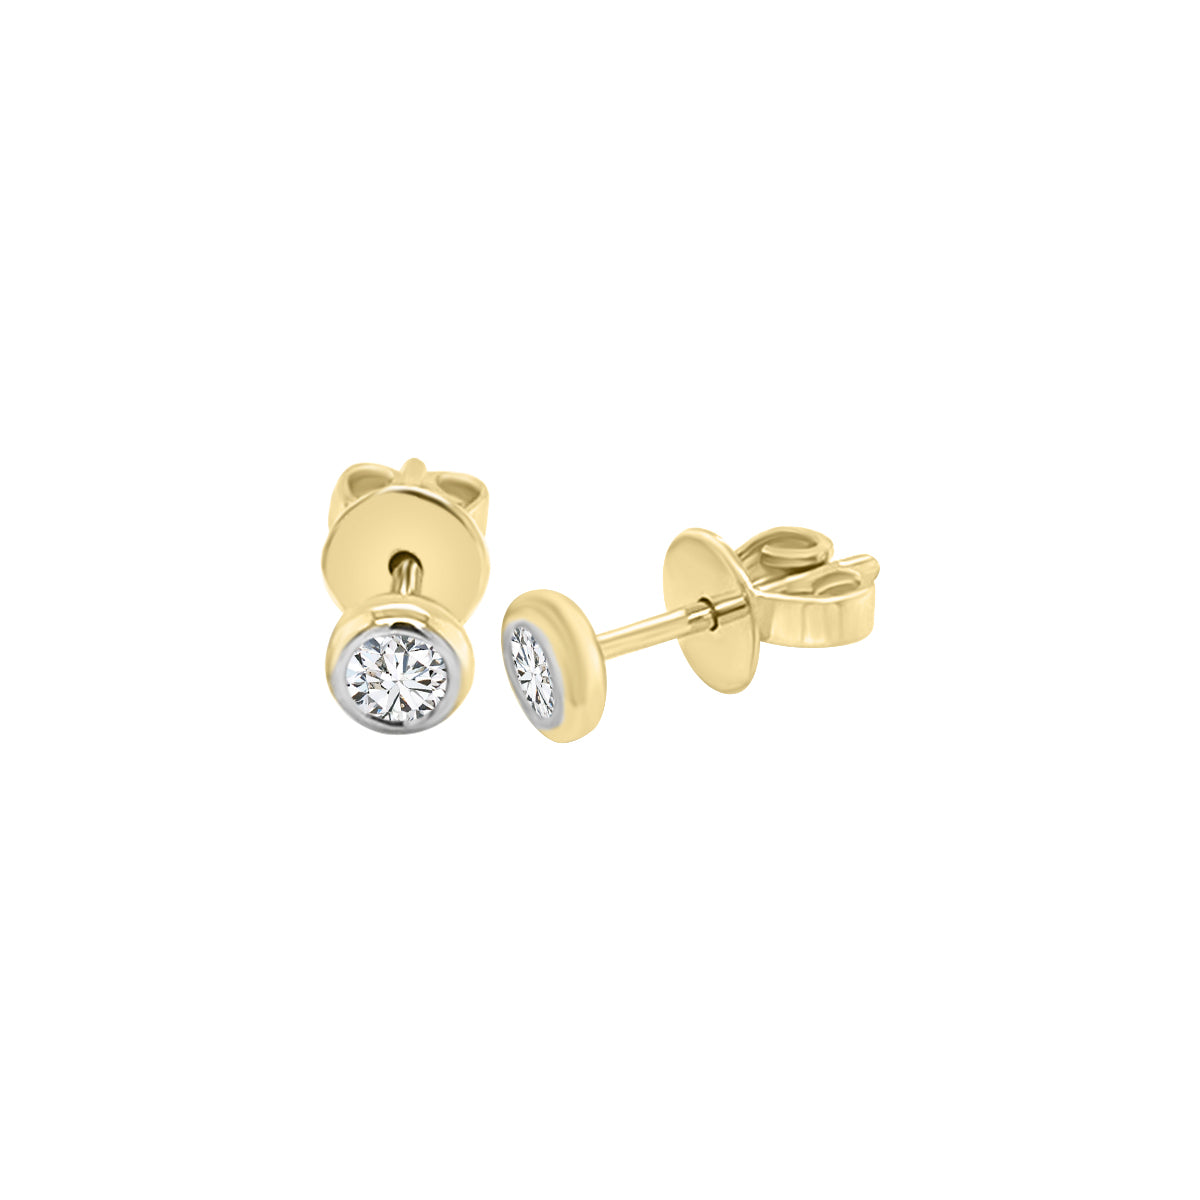 Bezel Set Diamond Stud Earrings In 18k Yellow Gold.